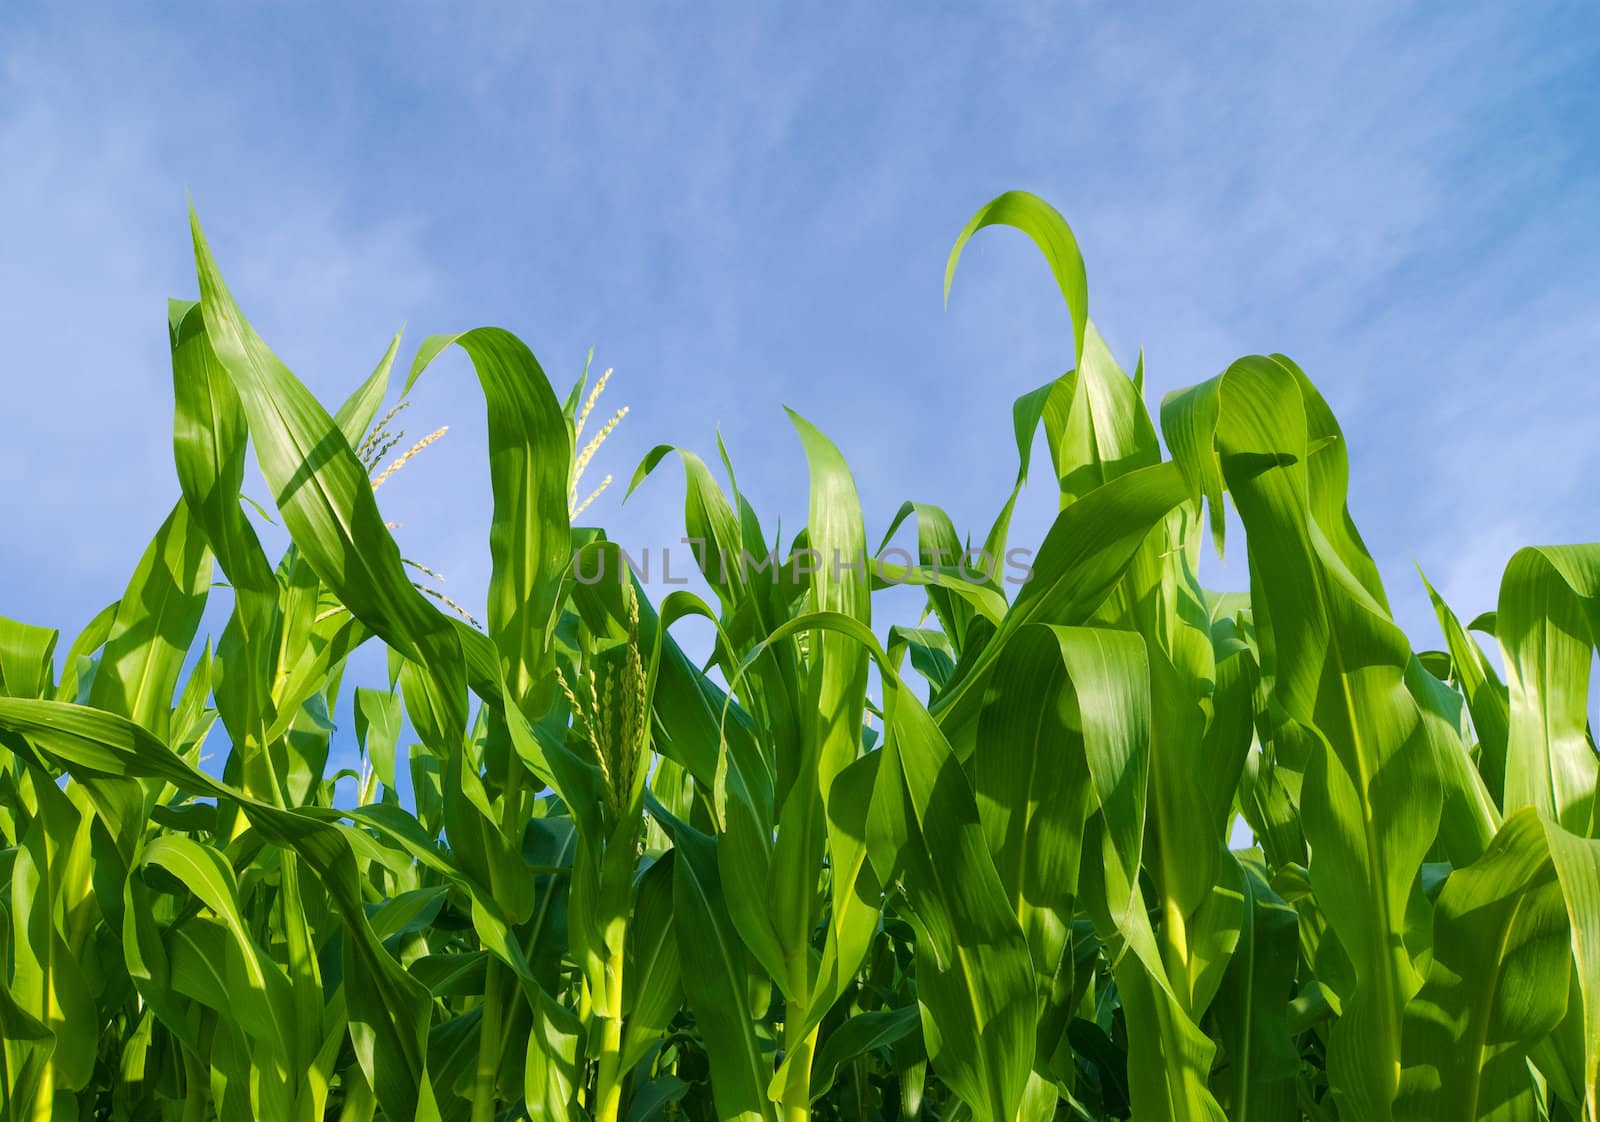 Corn Field by maxkrasnov